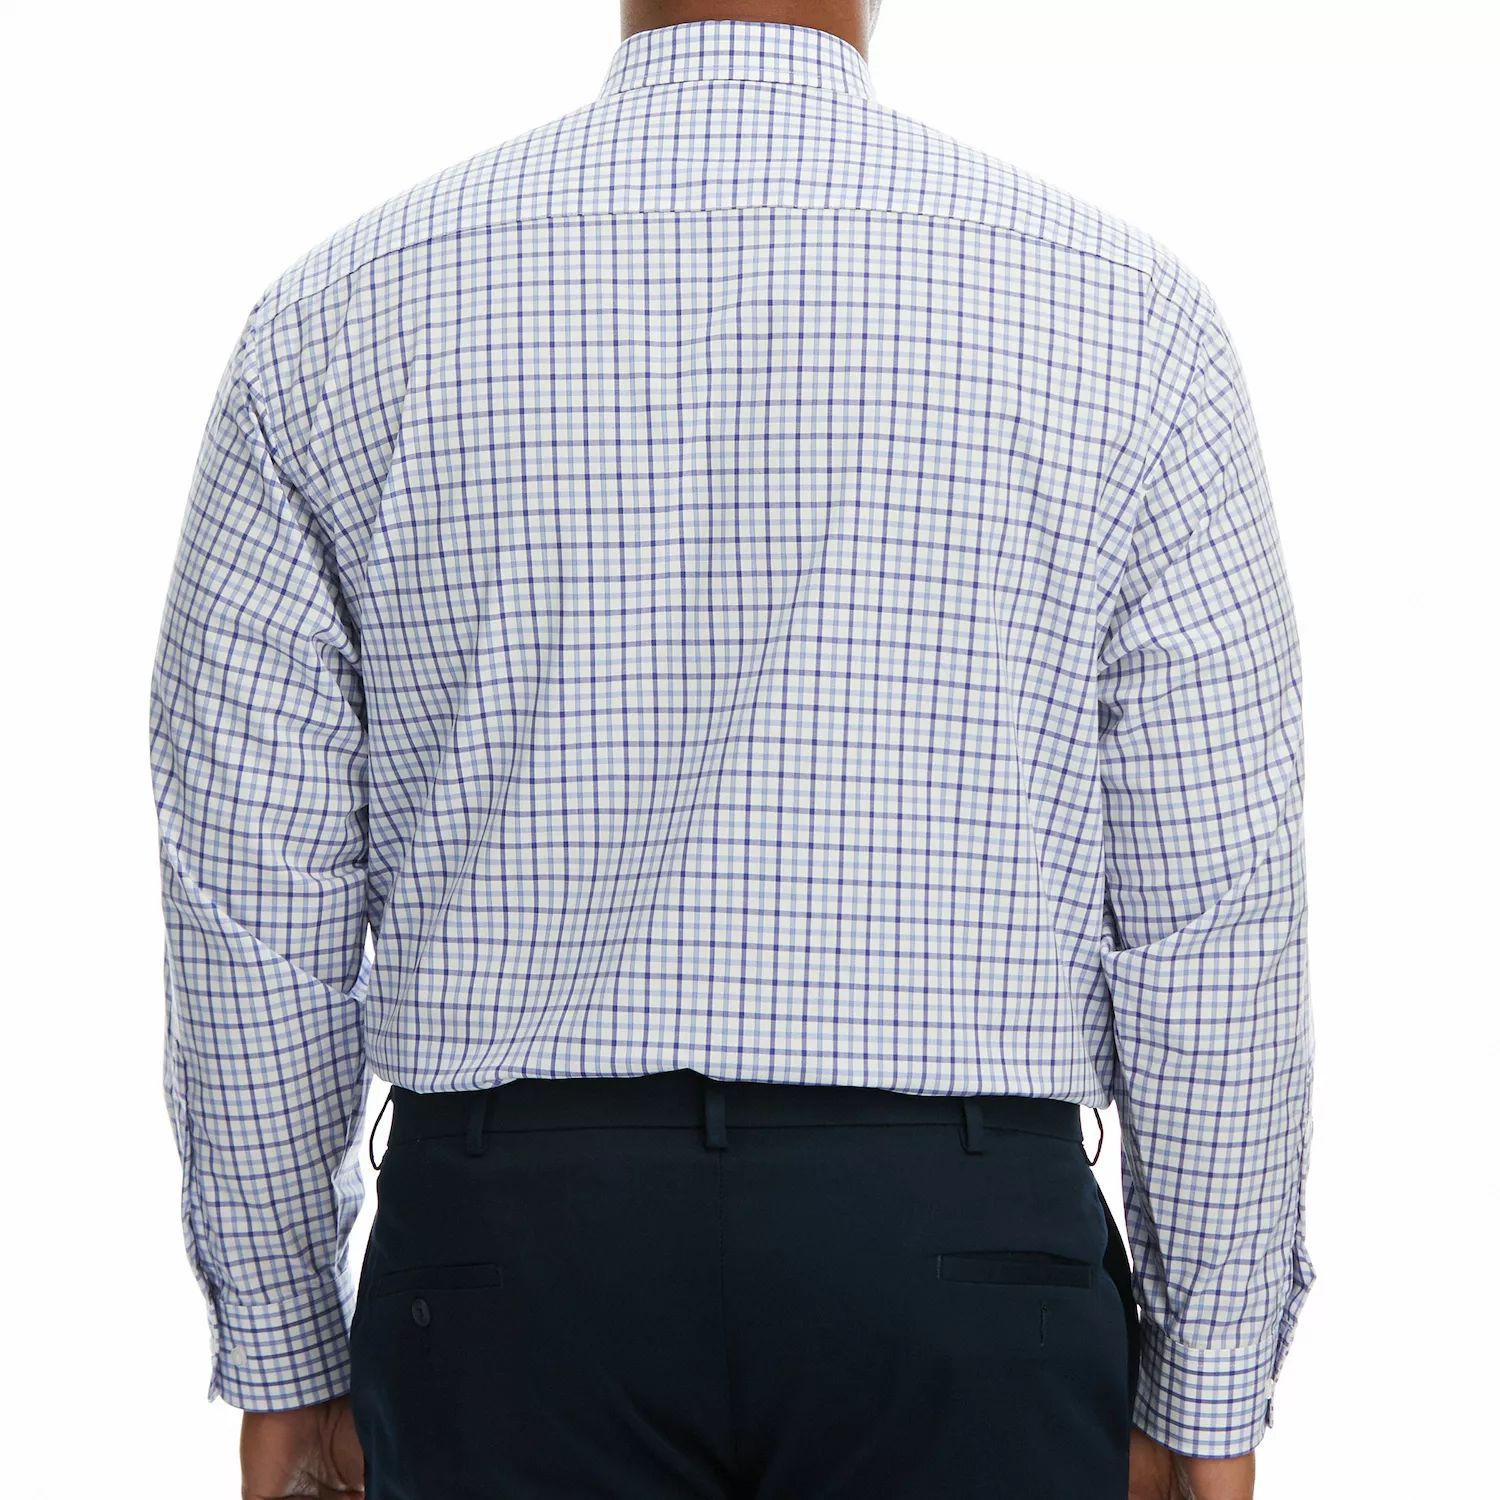 Комфортная классическая рубашка Big & Tall премиум-класса, устойчивая к морщинам Haggar moderna double smartly bowl double blue m